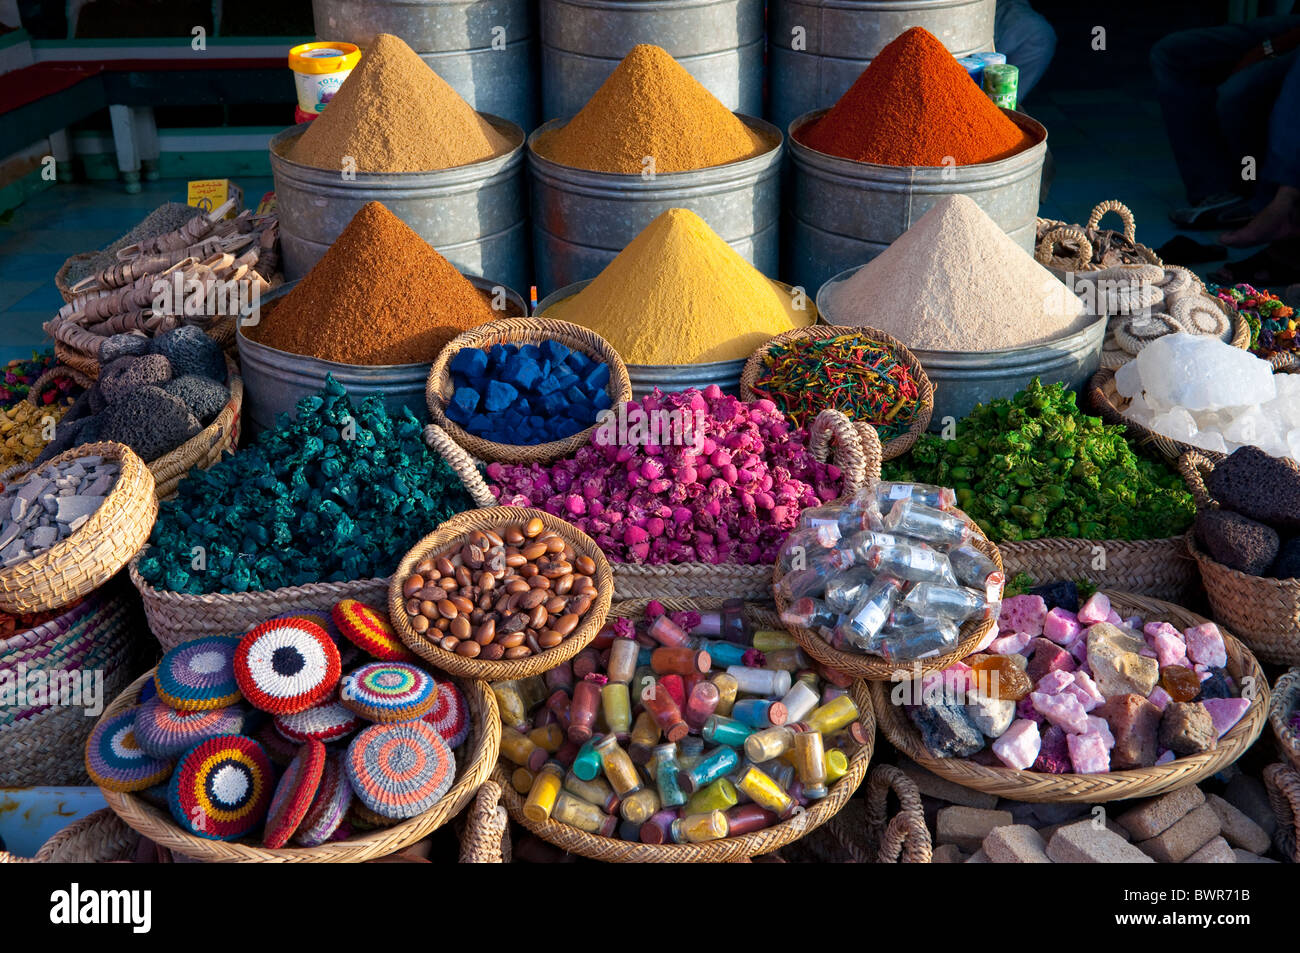 Der Souk Gewürzmarkt in der Medina von Marrakesch, Marokko ...